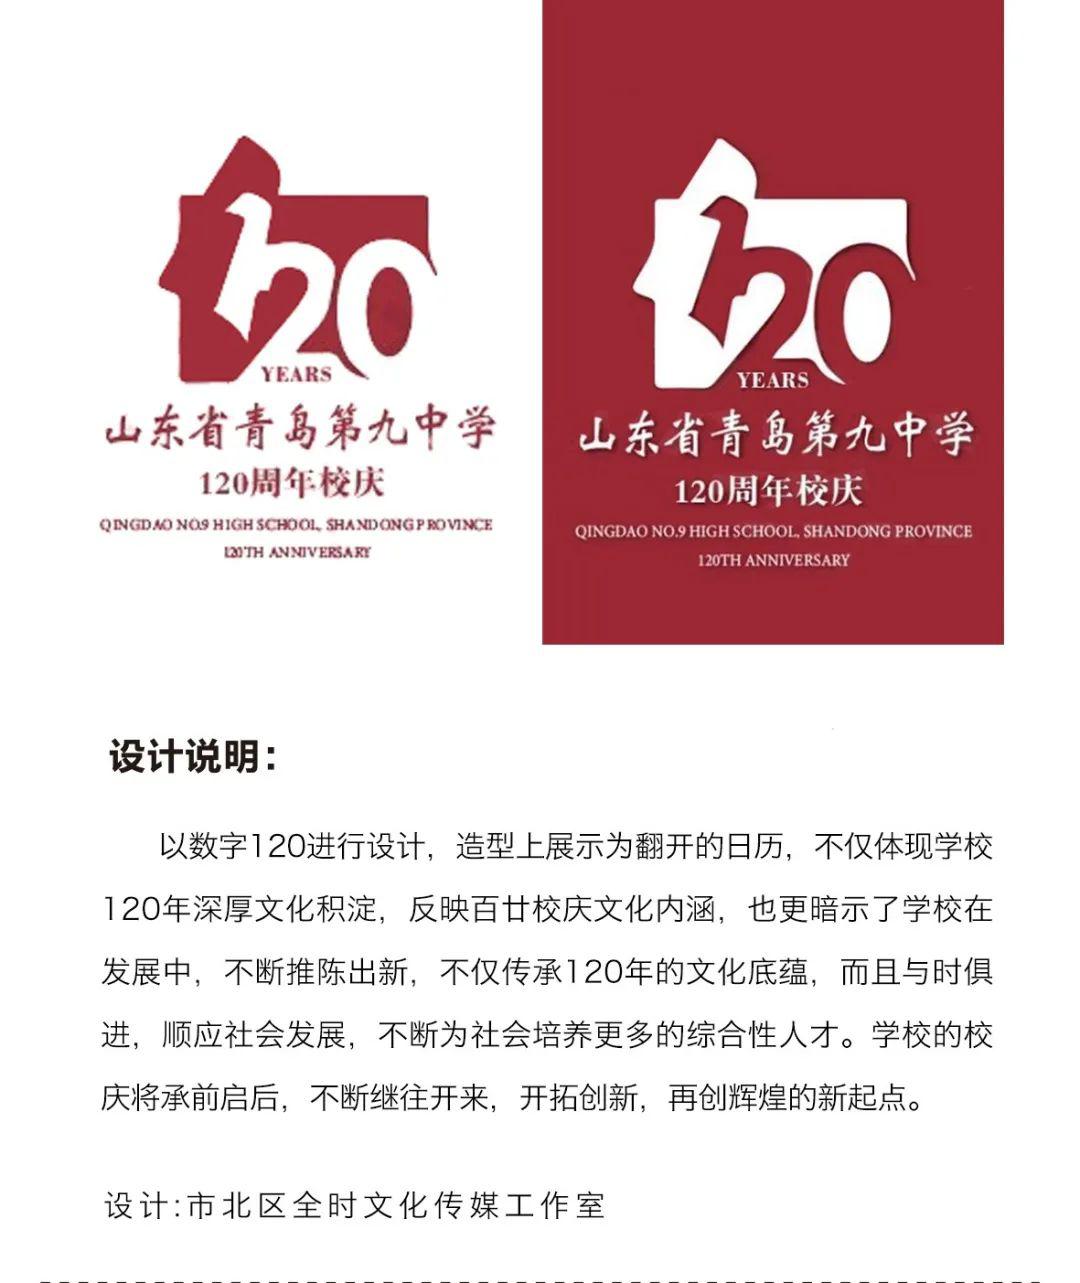 青岛九中120周年 校庆标识(logo)设计方案征集评选结果